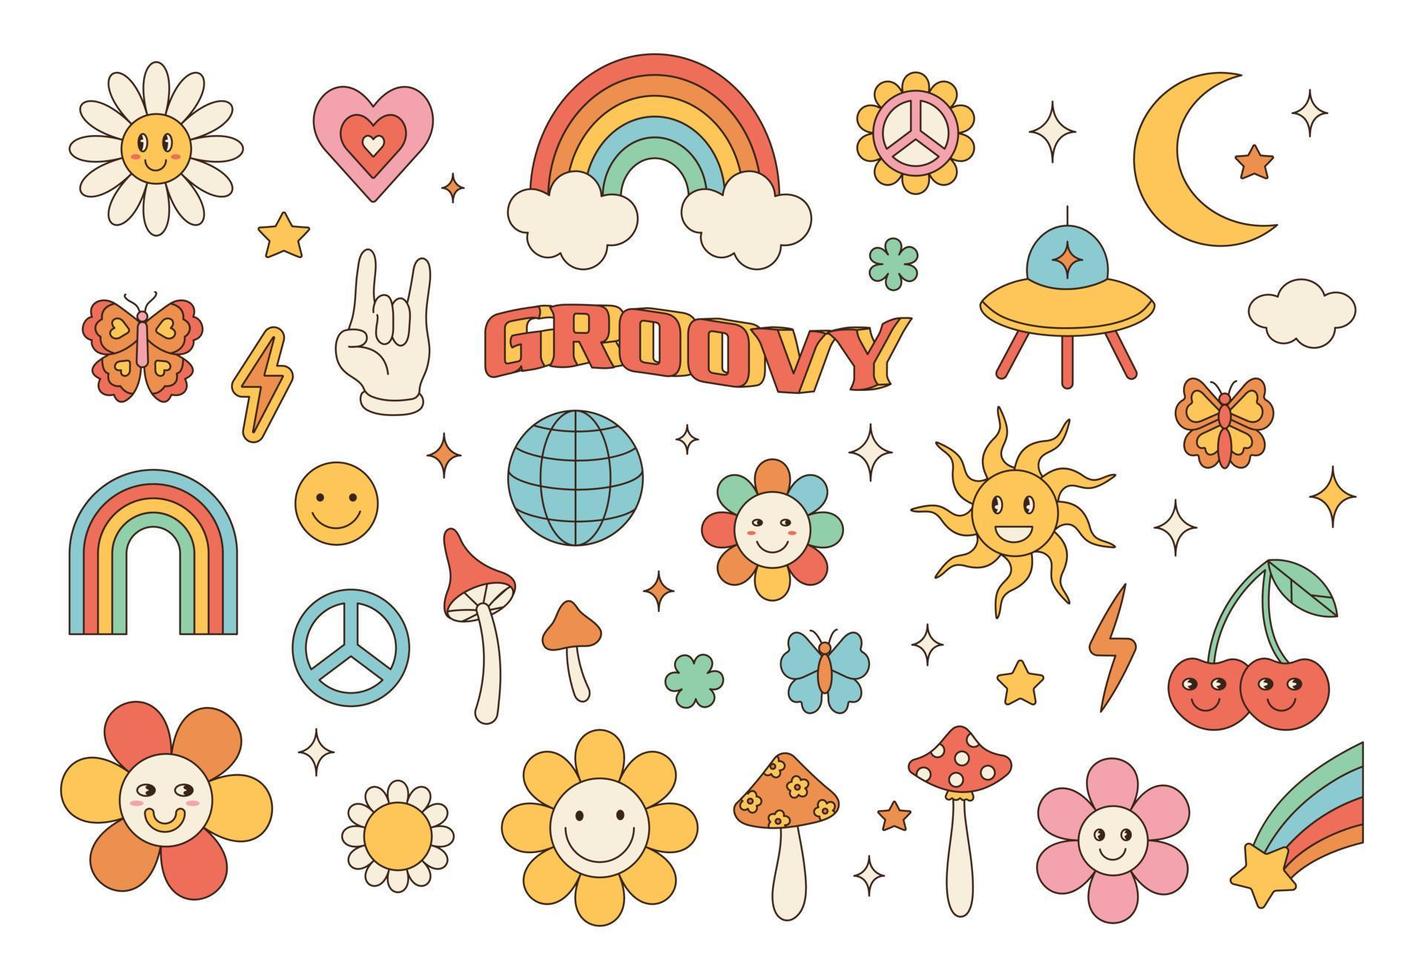 grooviges Hippie-70er-Set. lustige Cartoon-Blume, Regenbogen, Frieden, Liebe, Herz, Gänseblümchen, Pilze usw. Aufkleberpackung im trendigen Retro-Psychedelic-Cartoon-Stil. vektor